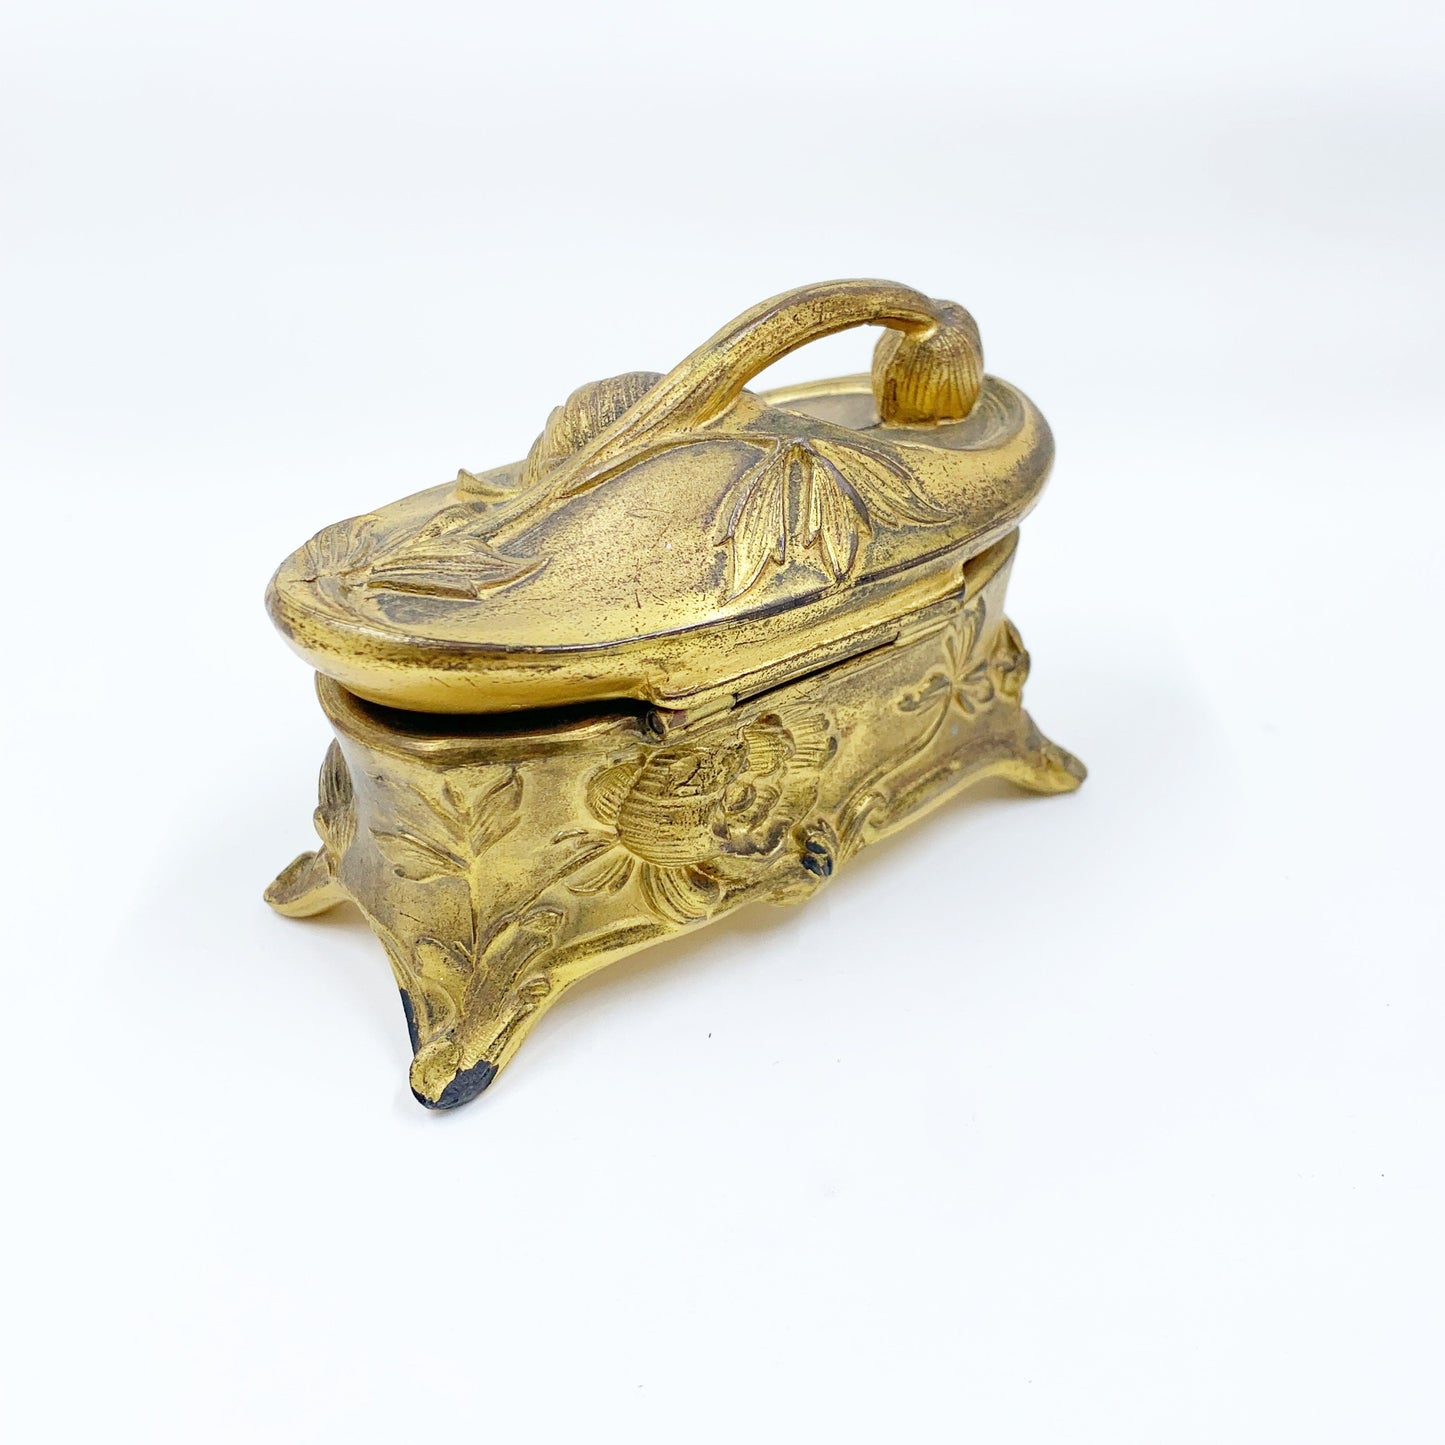 Antique Art Nouveau Jewelry Casket |  Antique Jewelry Casket Box | Antique Victorian Repousse Trinket Box